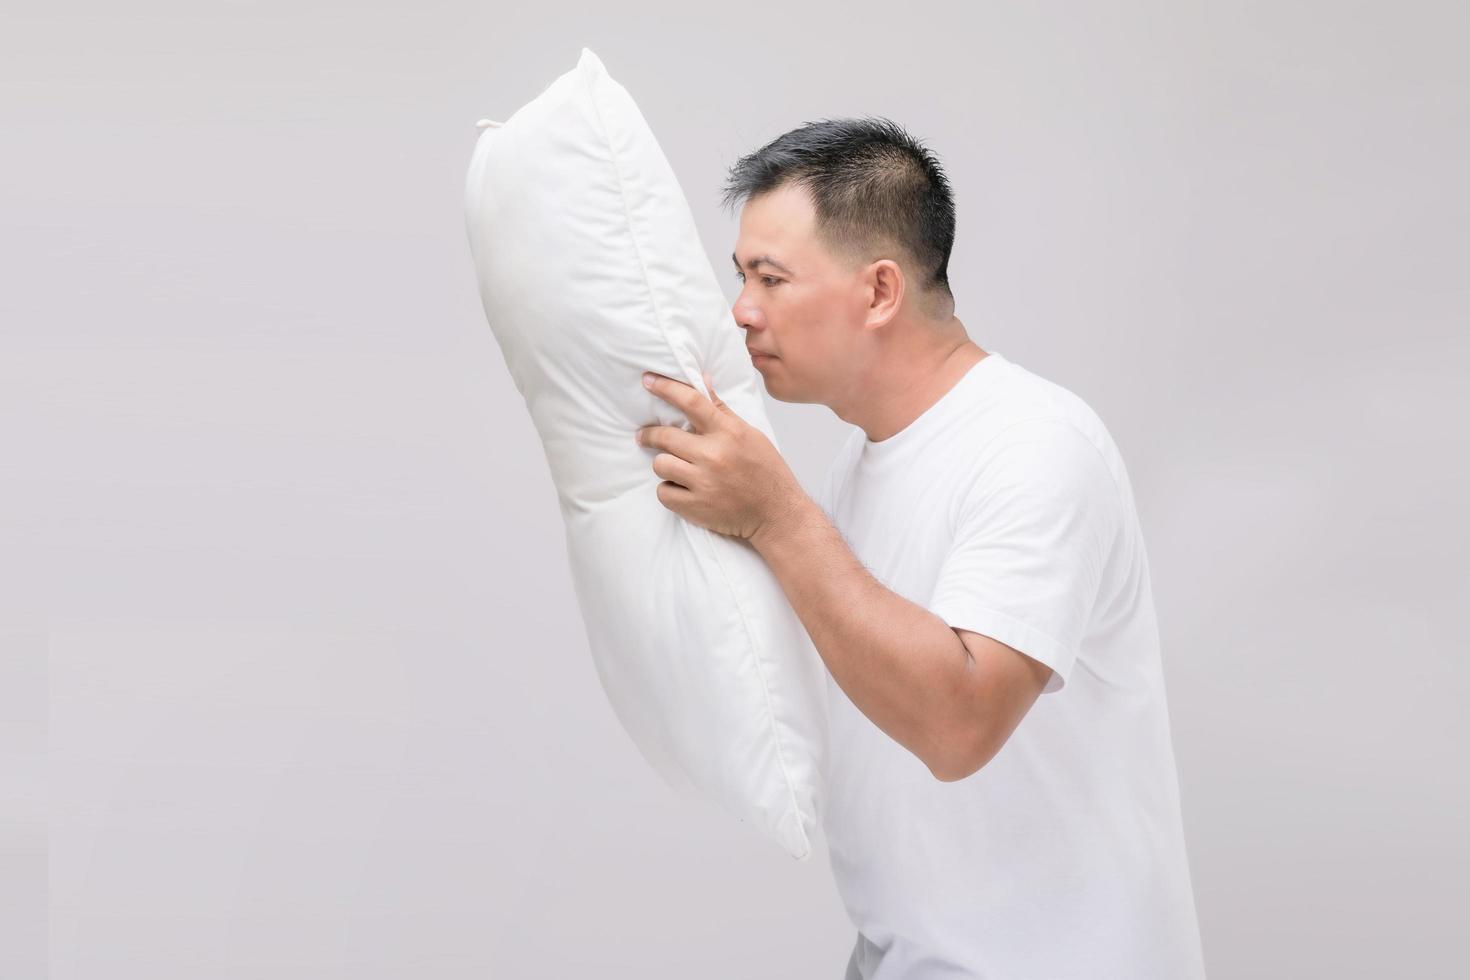 la almohada huele mal. retrato de un hombre asiático sosteniendo una almohada blanca y con mal olor. foto de estudio en gris